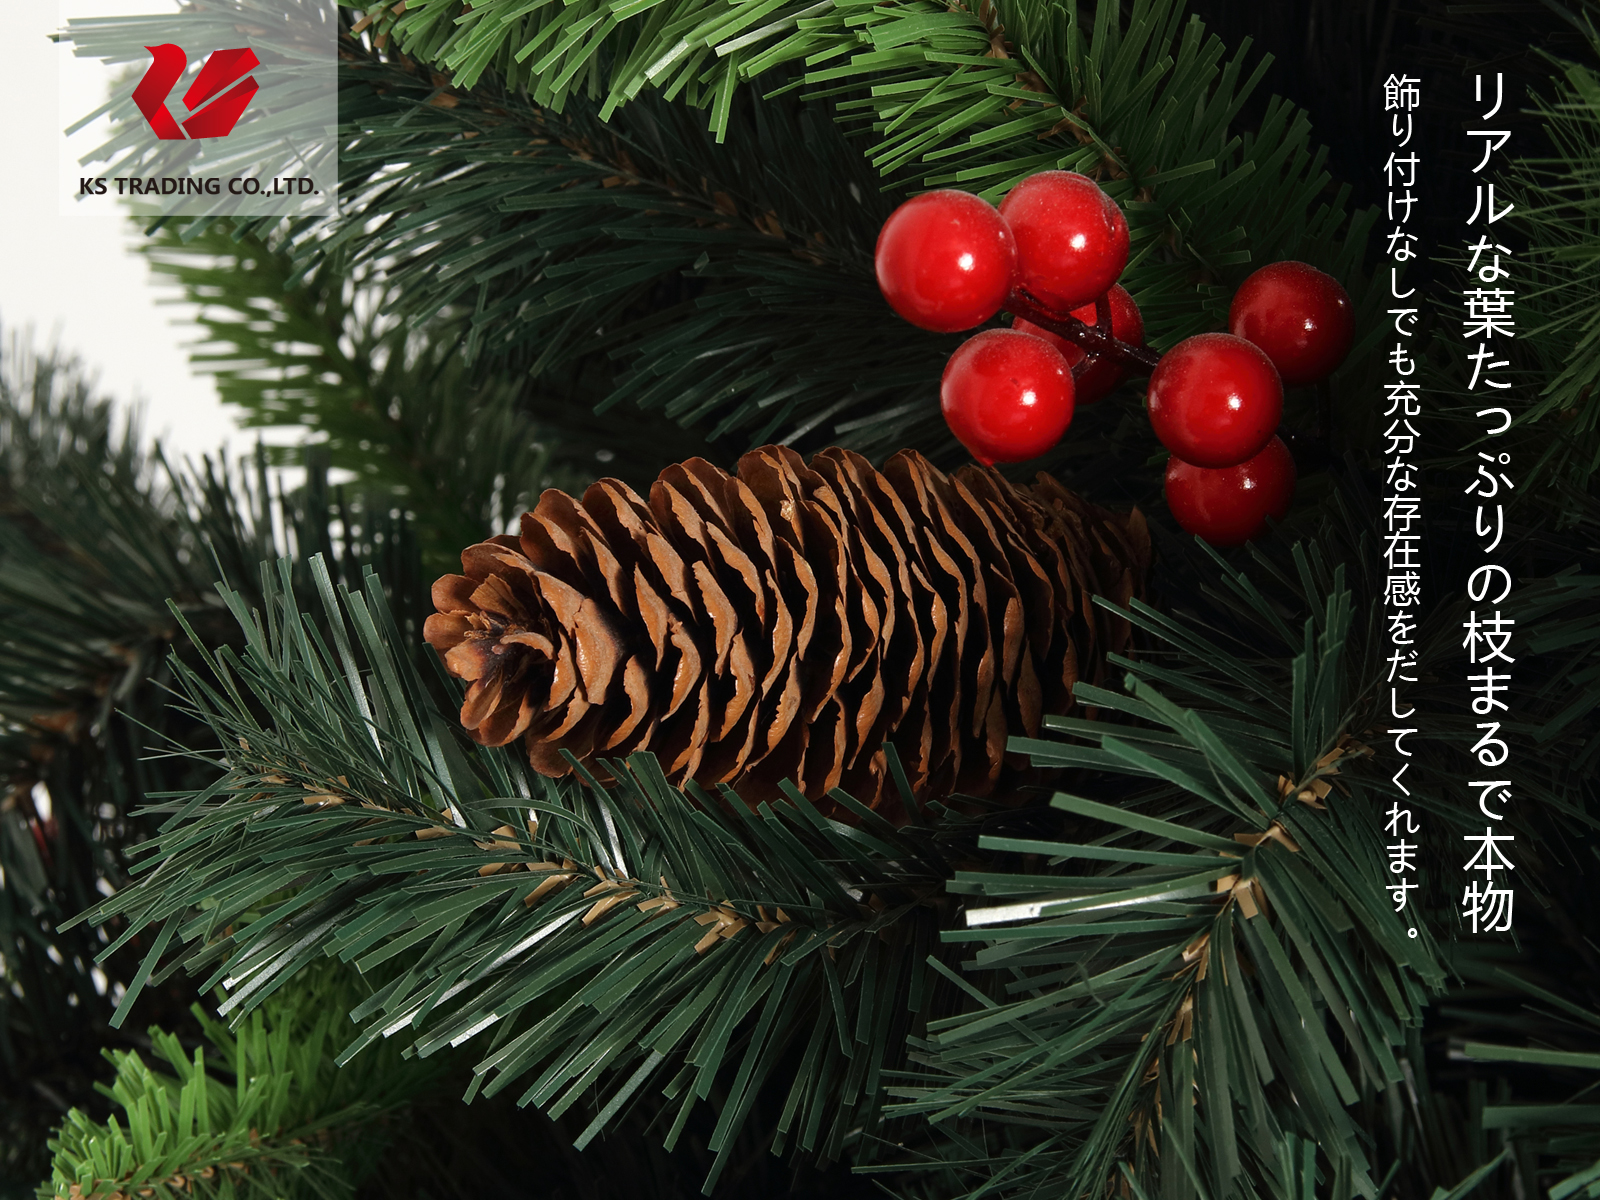 楽天市場 クリスマスツリー 枝大幅増量タイプ 松ぼっくり付き 赤い実付き 北欧風ツリー150cm Kstt Kobe Store